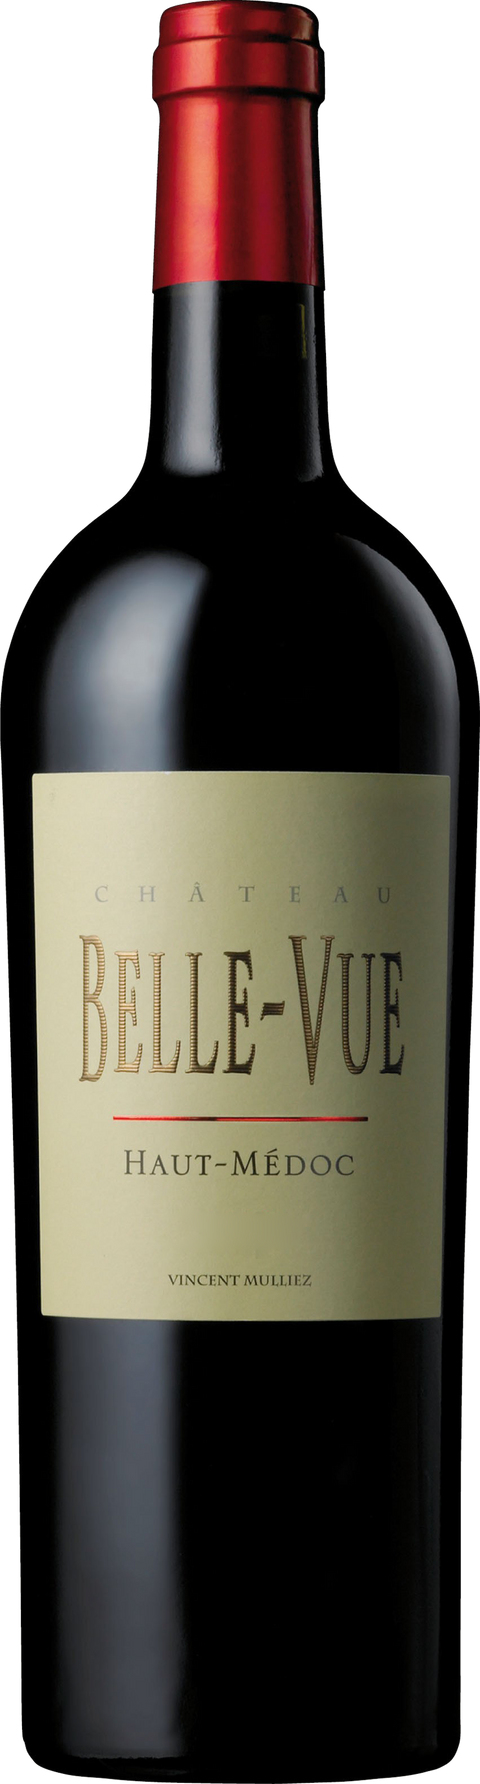 Chateau Belle-Vue---2018---Rouge---Château Belle-Vue---0.75